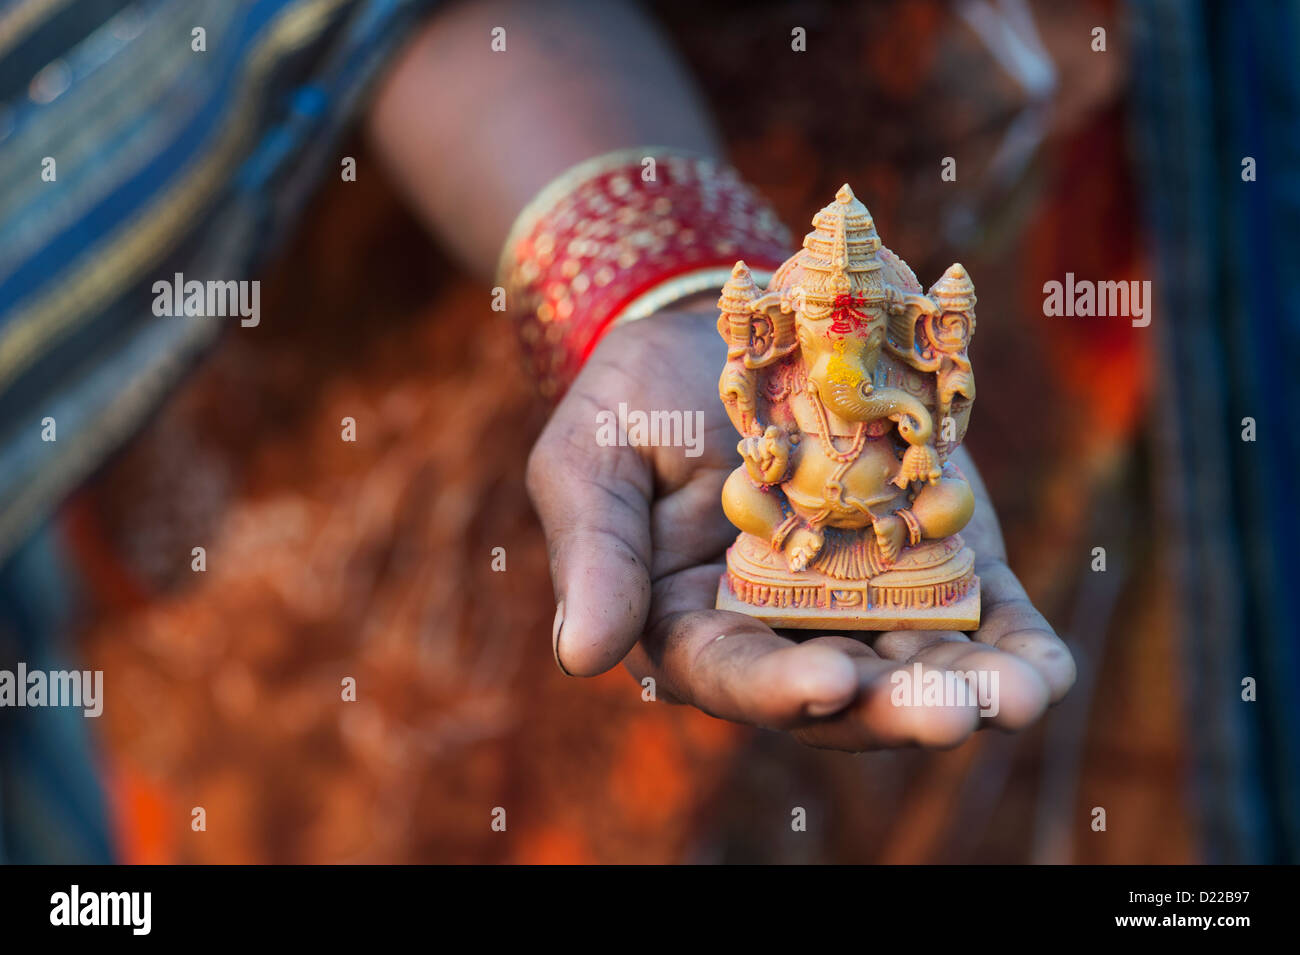 Hindu Elephant God. Indian girls hand holding Lord Ganesha statue ...